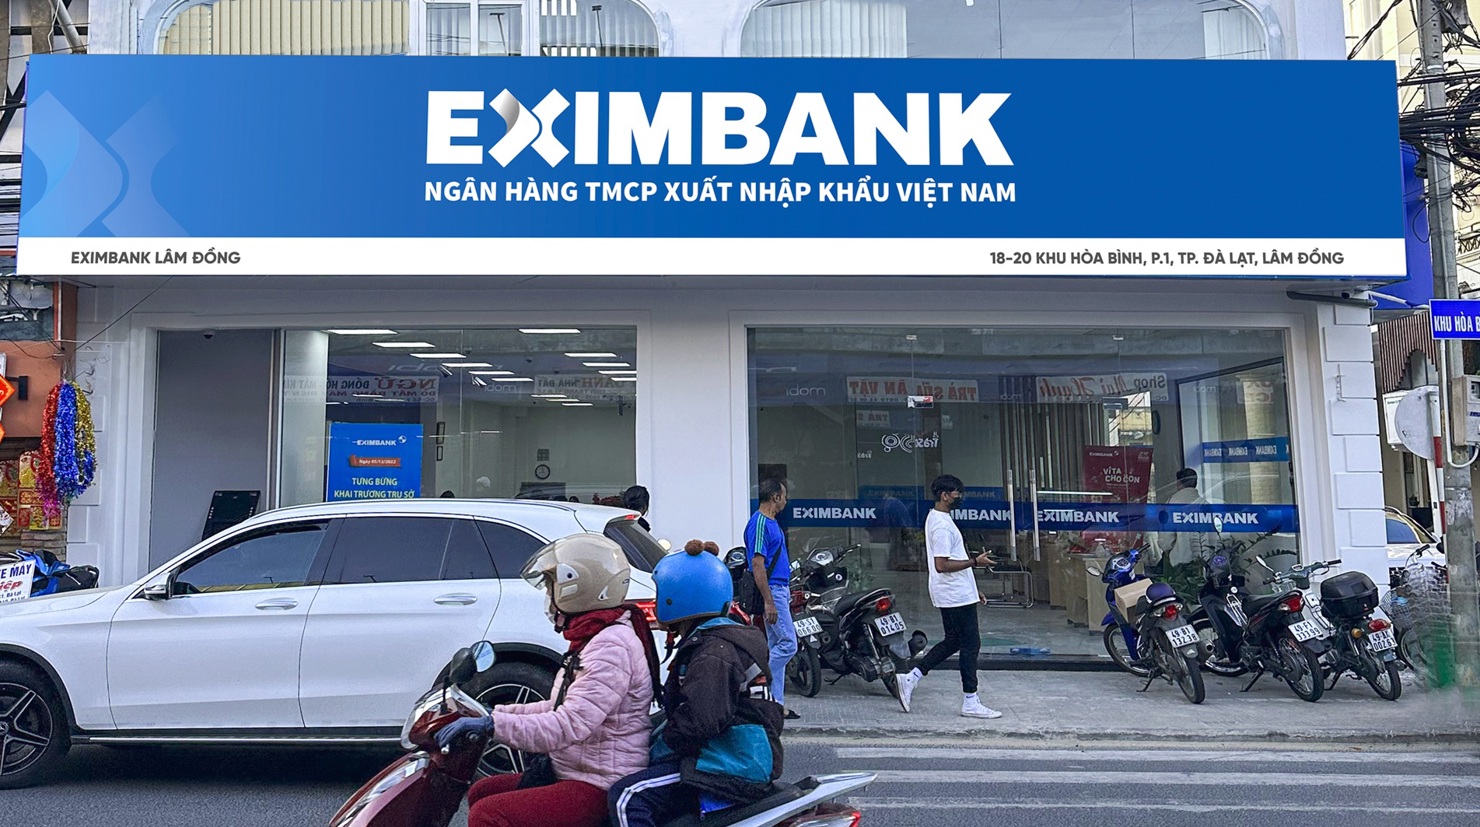  Tại Ngân hàng Eximbank, lãi suất 12 tháng hiện nay ở mức là 7,2%/năm. 